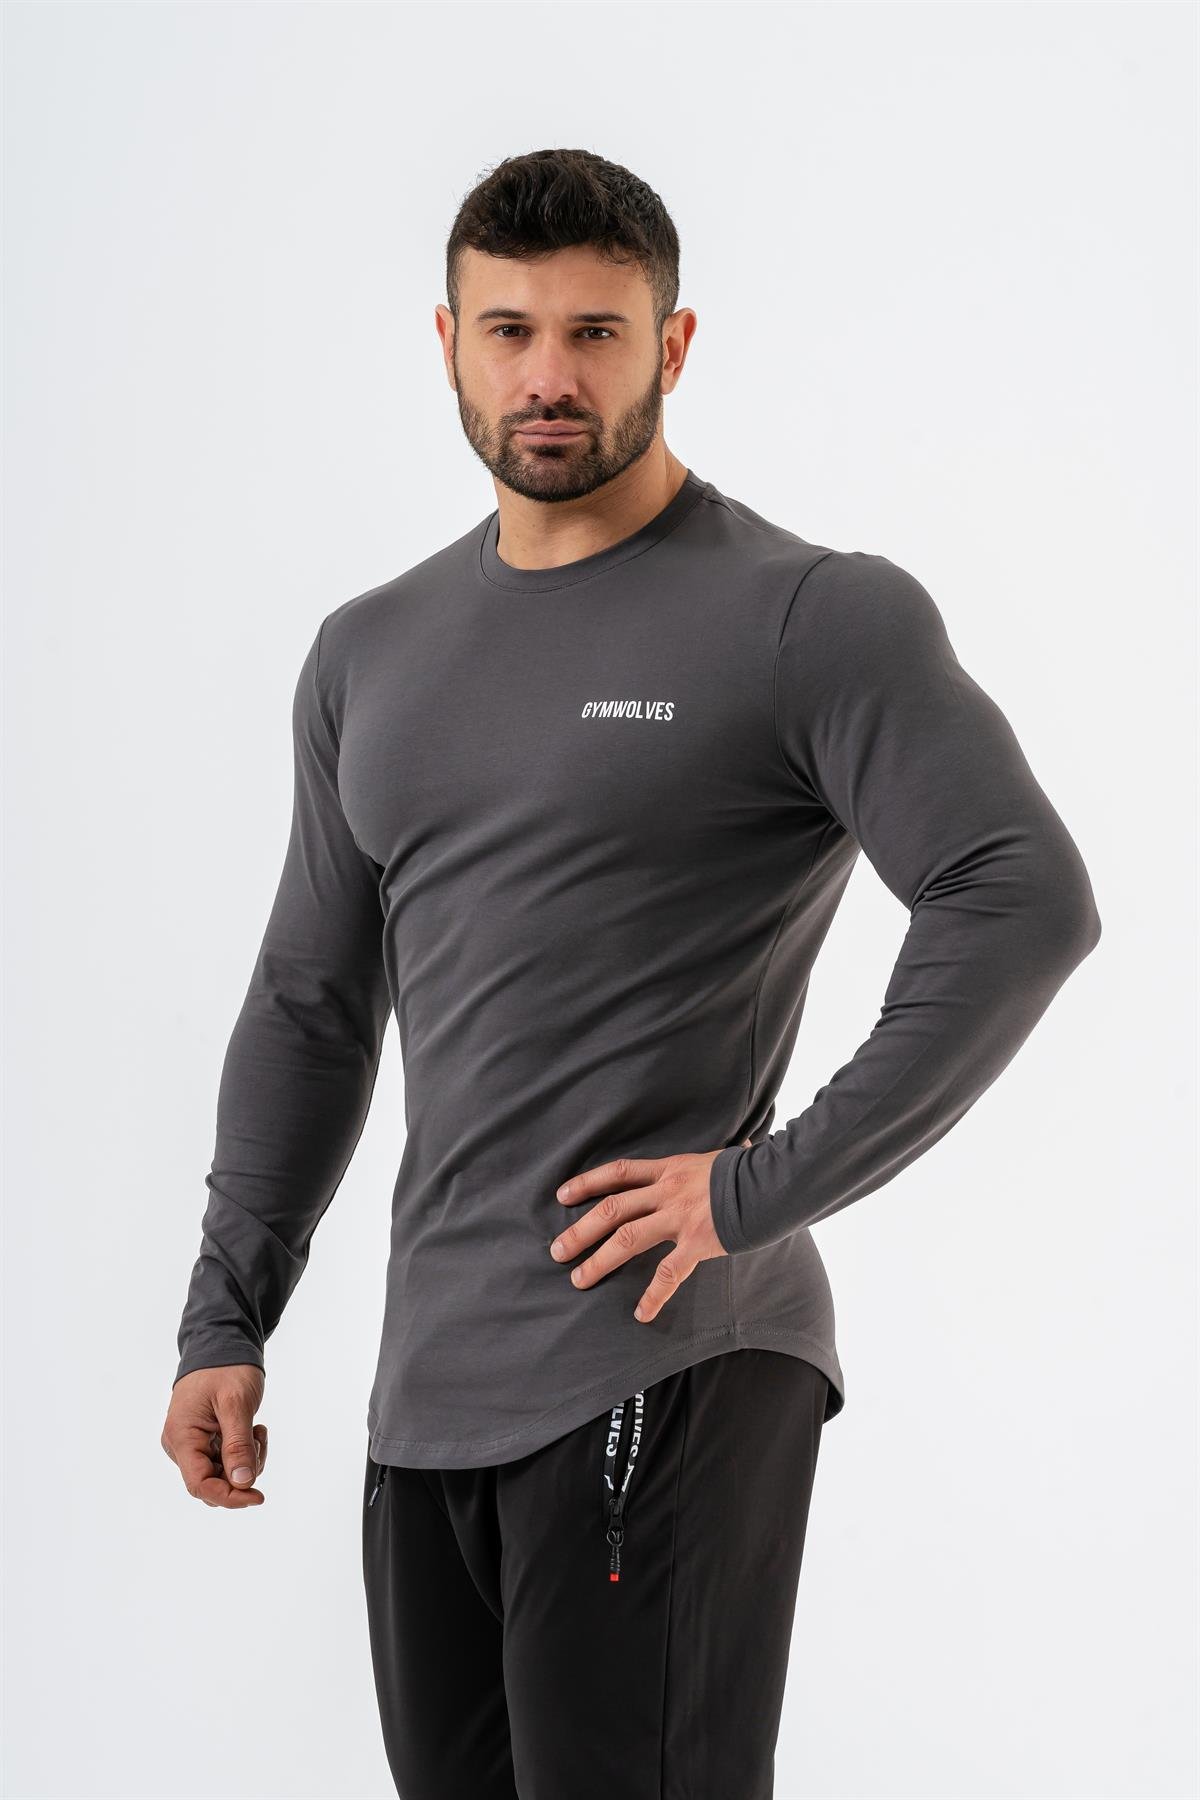 Gymwolves Erkek Spor Body | Basic Serisi | Uzun Kollu Spor T-Shirt